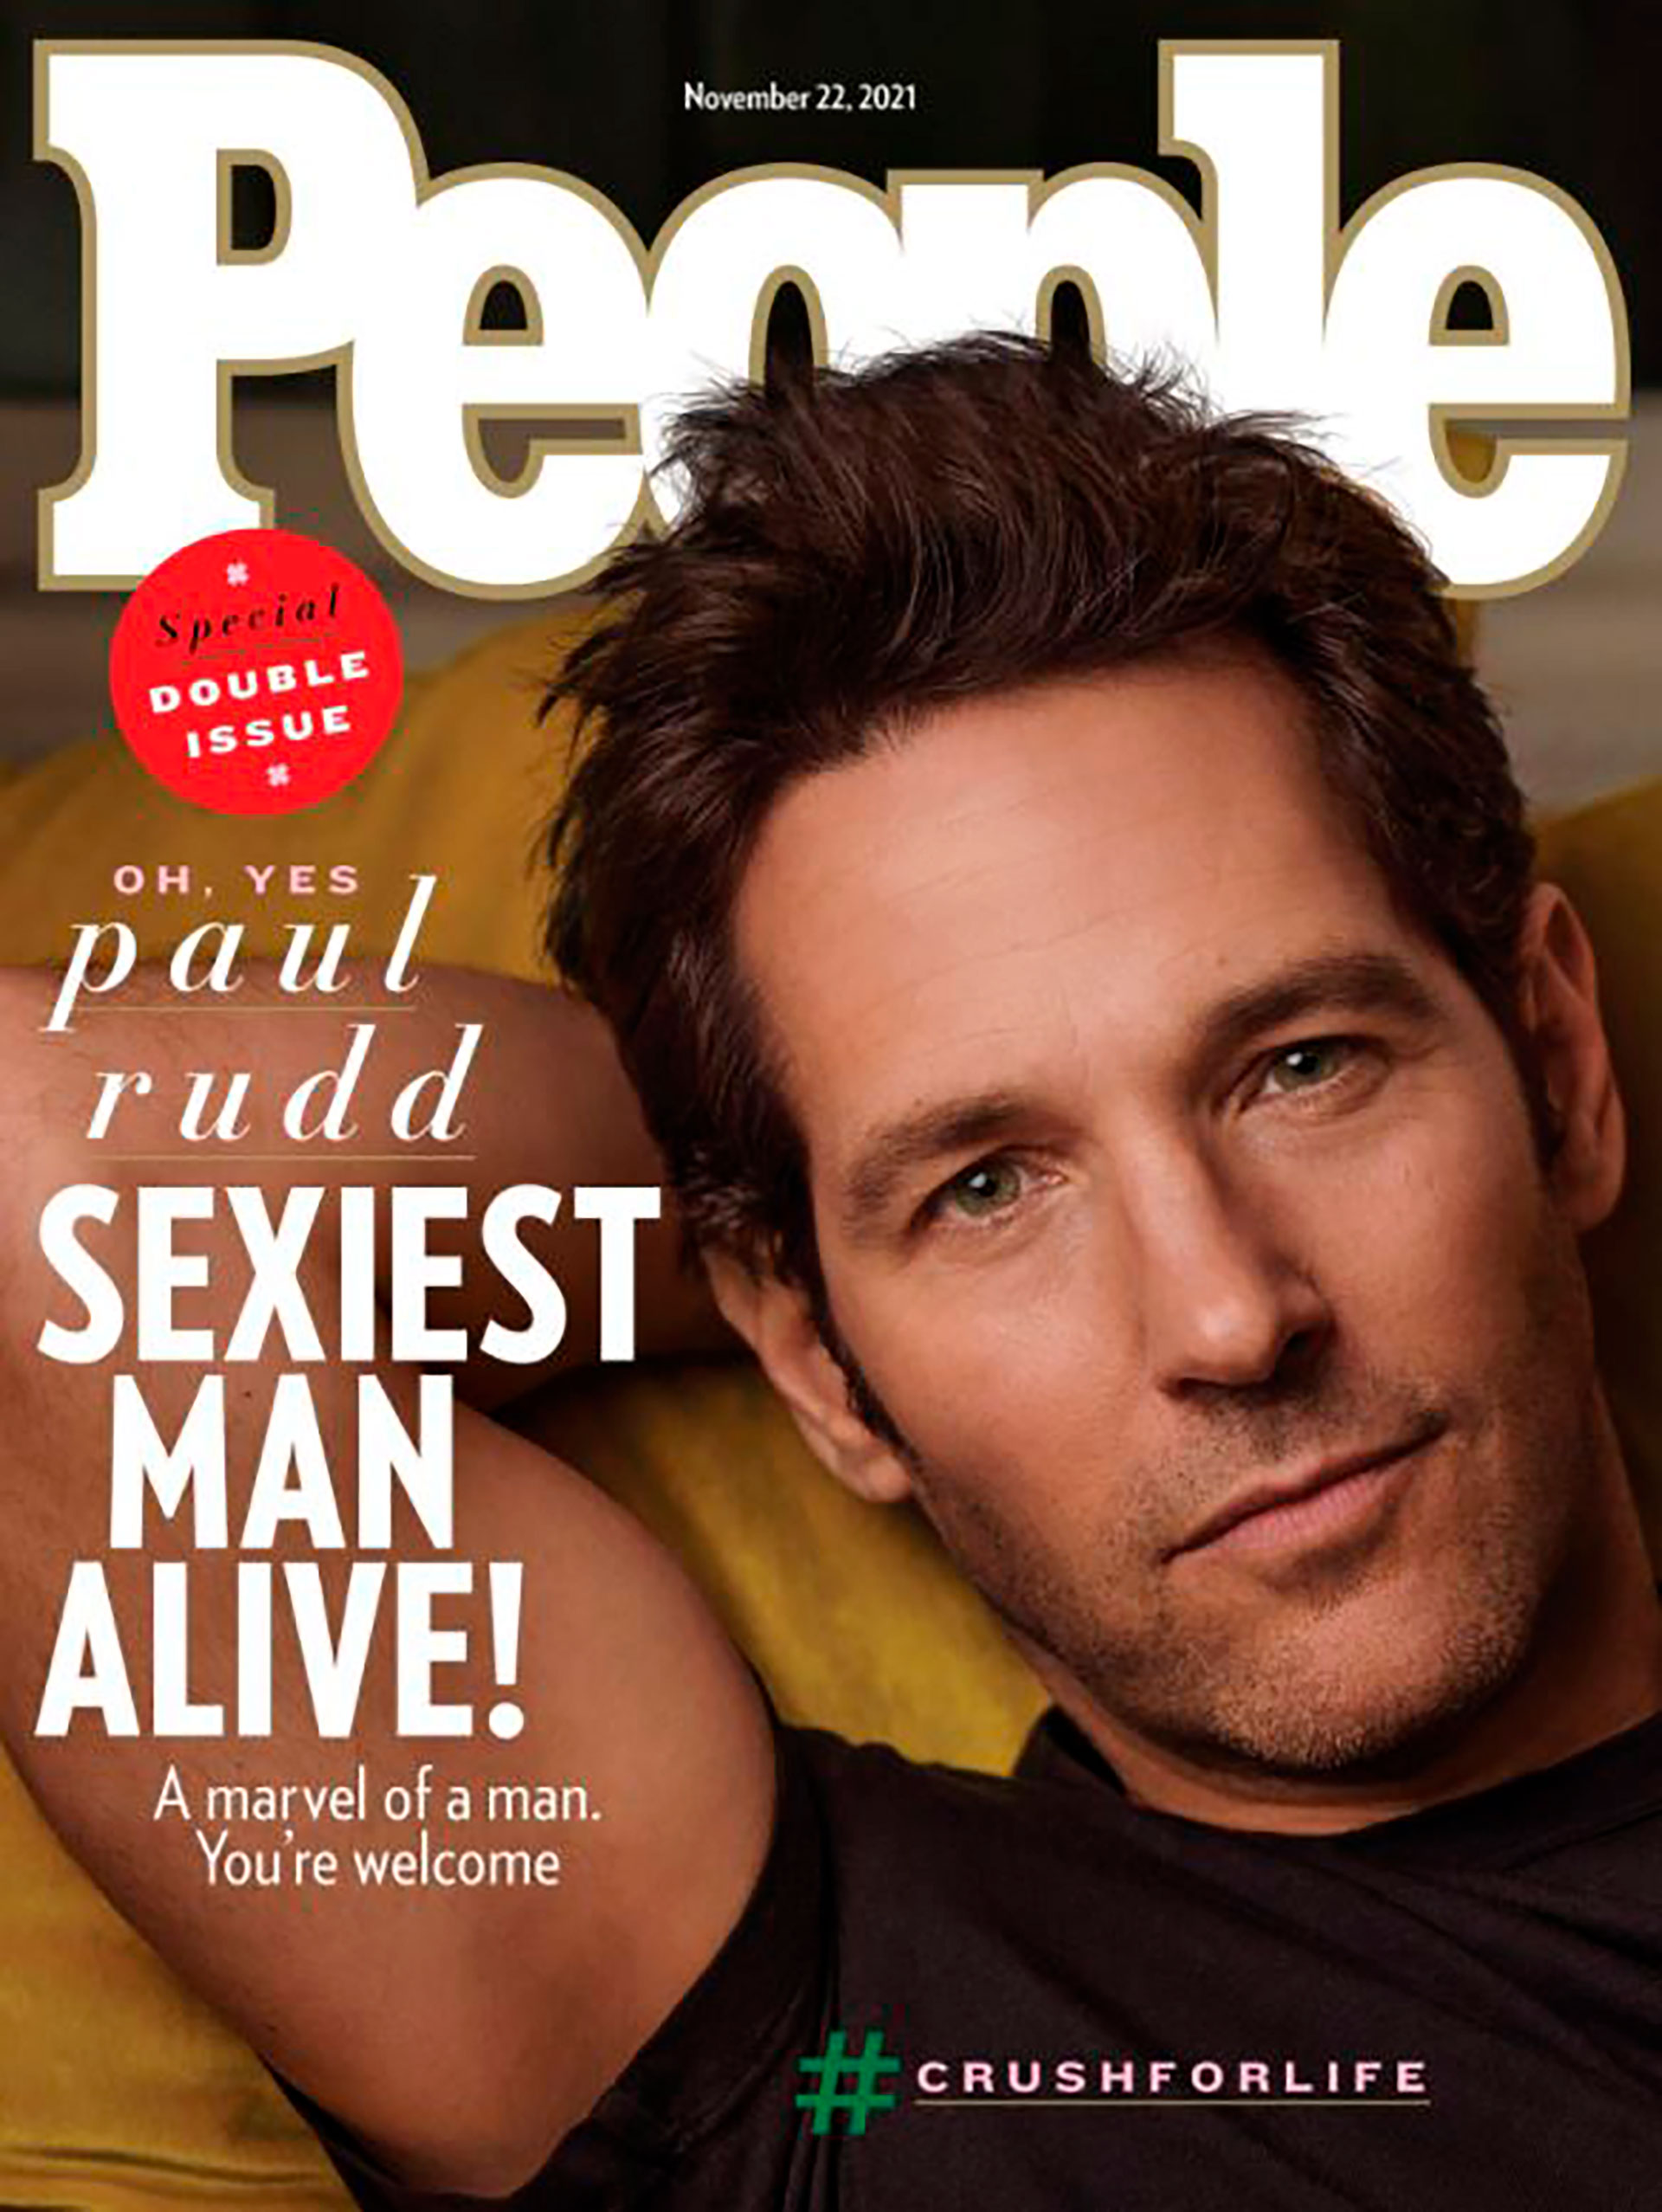 La portada de la revista People al anunciar al hombre mas sexy en 2021.